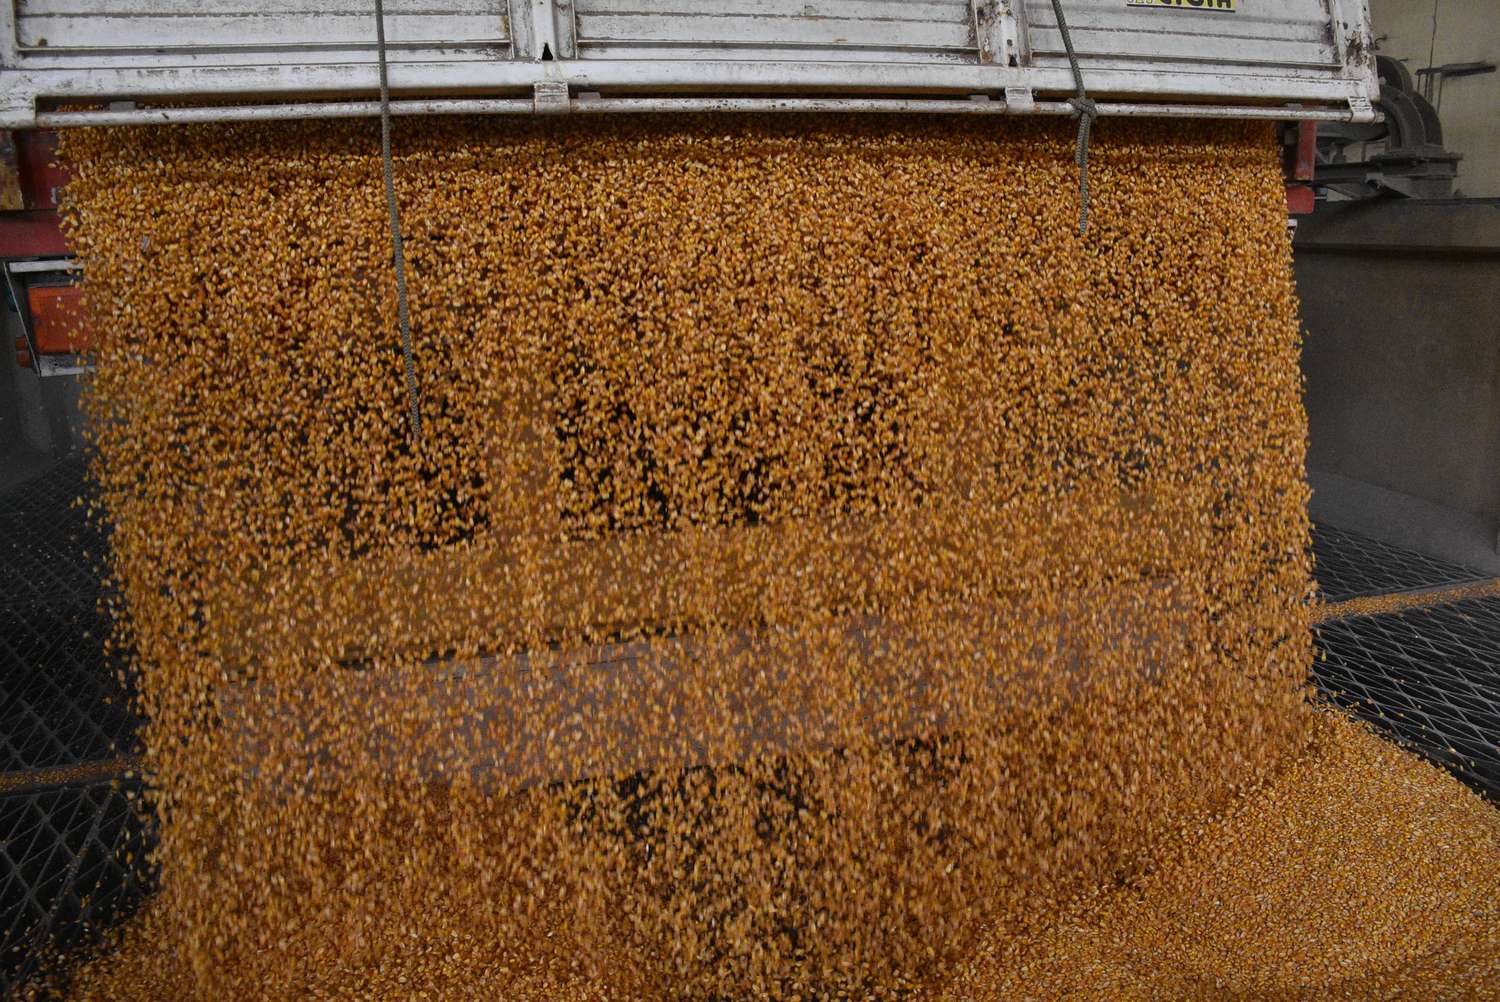 Agricultura prorrogó por 180 días los embarques de maíz por la sequía